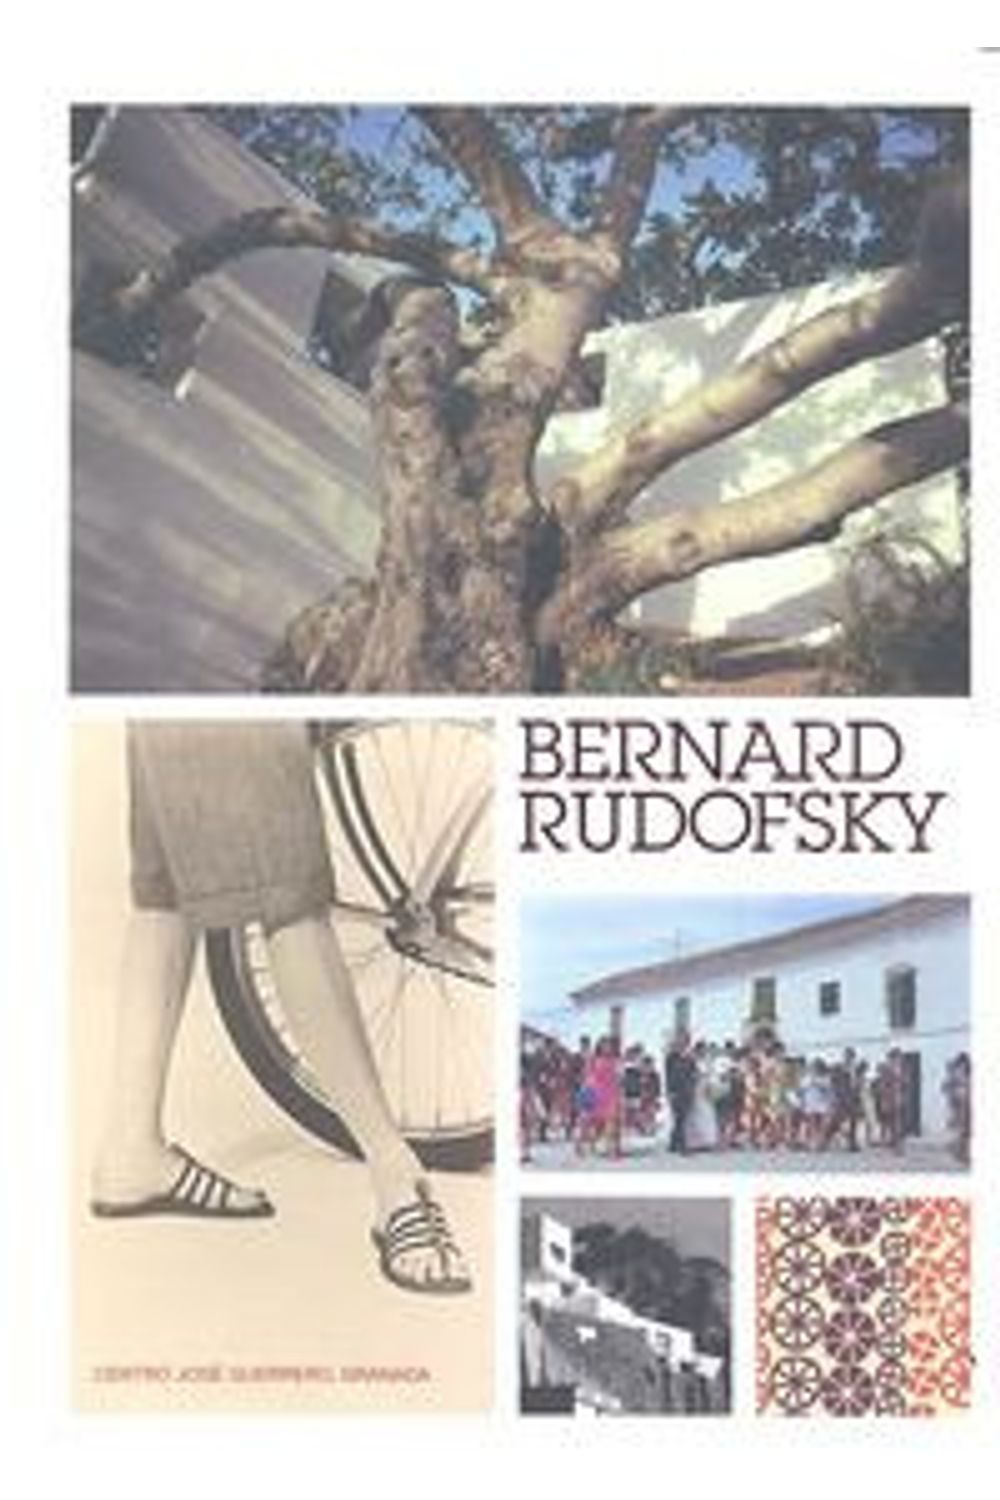 Bernard Rudofsky